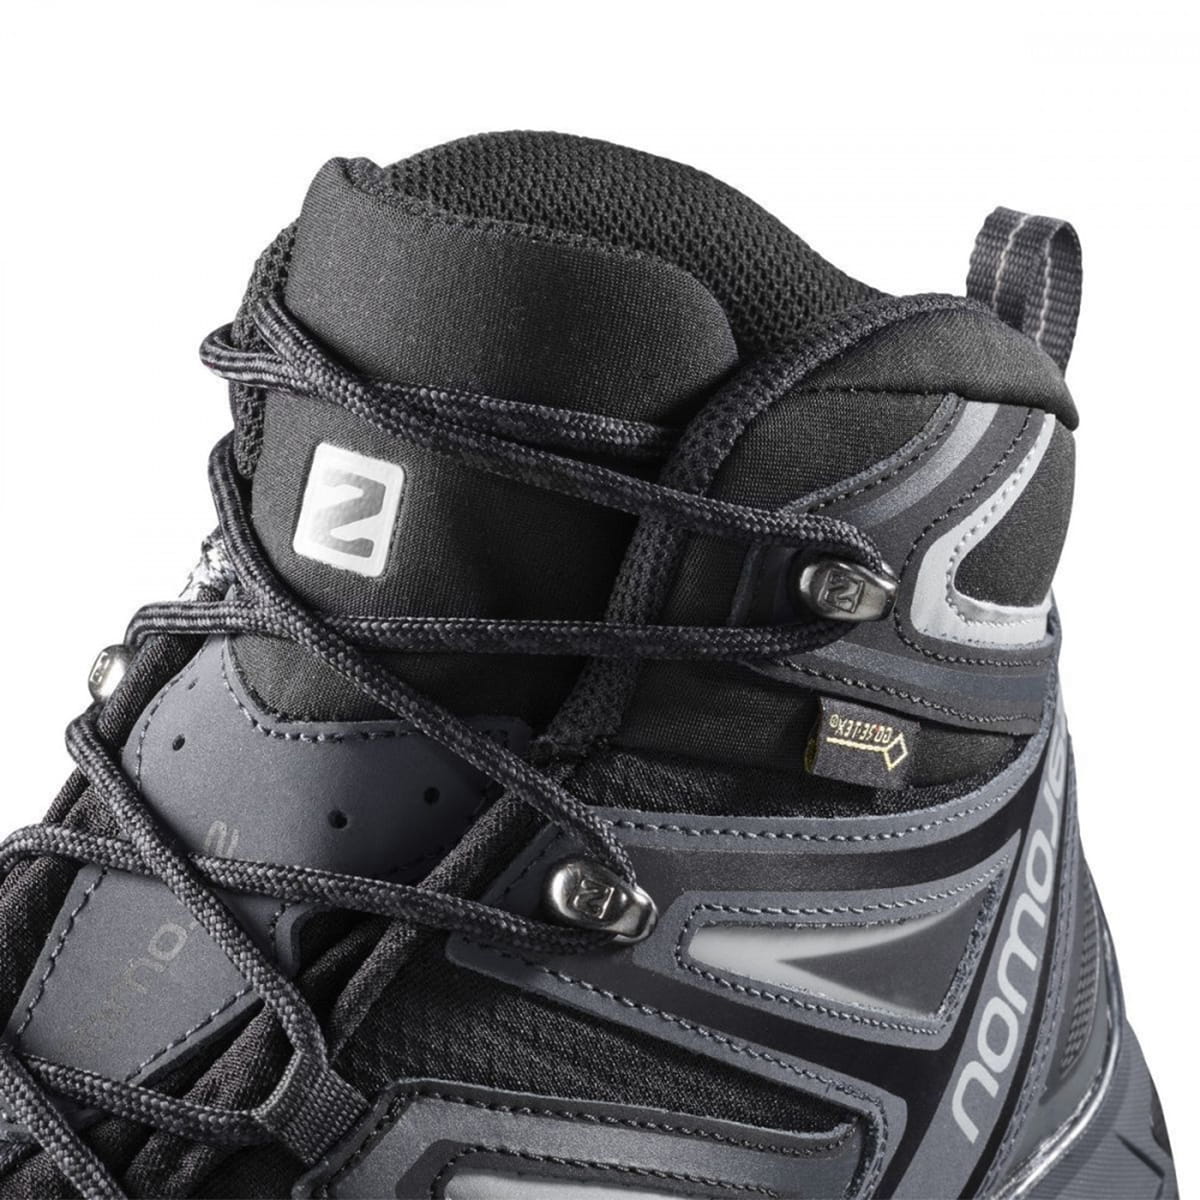 Купить ботинки Salomon X Ultra 3 Mid Gtx Bk/India Ink/M черный от Salomonпо выгодной цене за 14990 Р